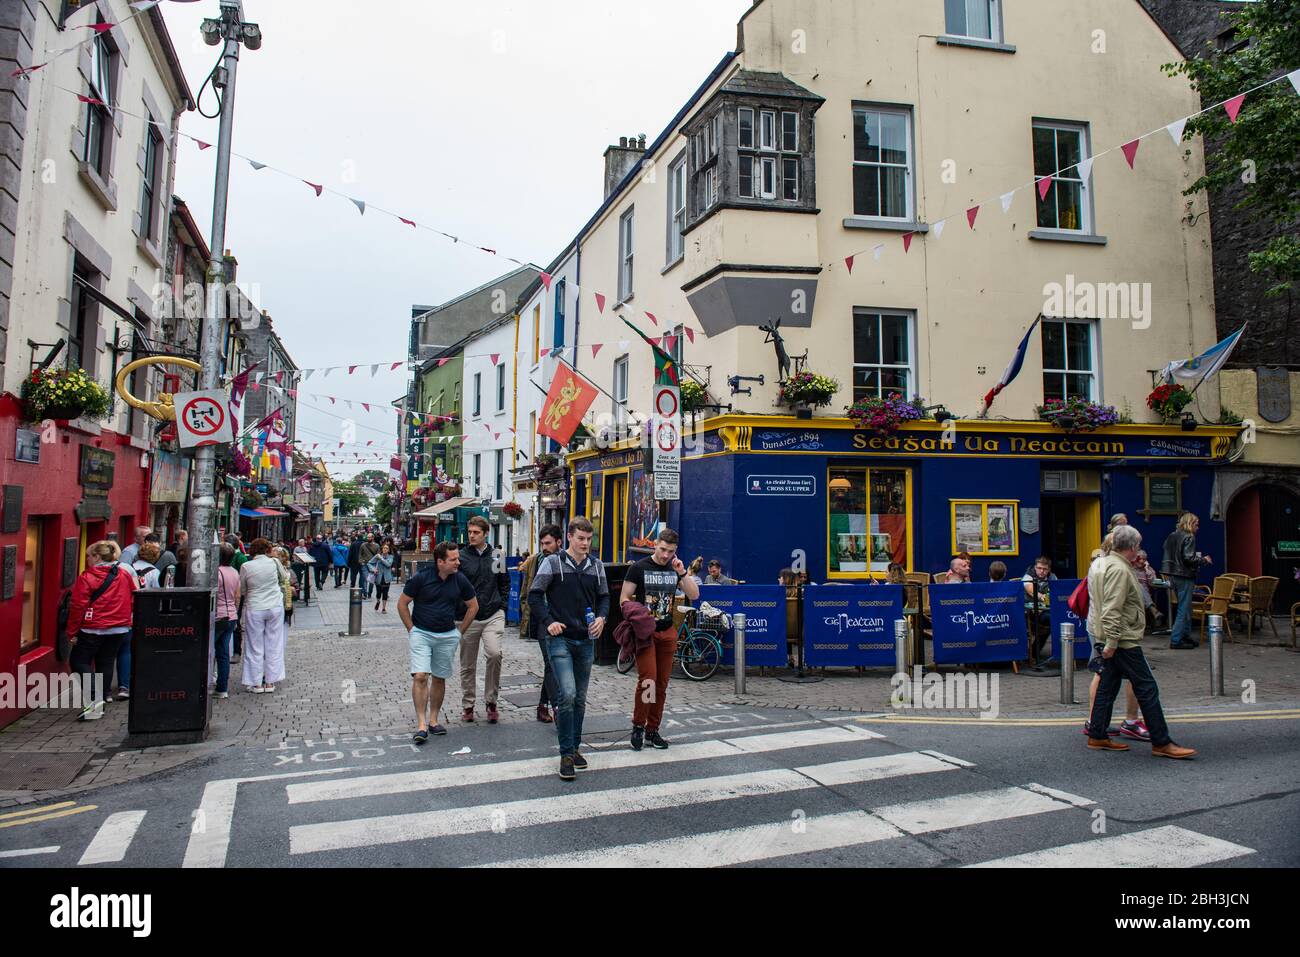 GALWAY, IRLANDA - 21 GIUGNO 2017: Passeggiata attraverso Quay Street nella popolare zona del quartiere Latino della città di Galway, Irlanda. Foto Stock